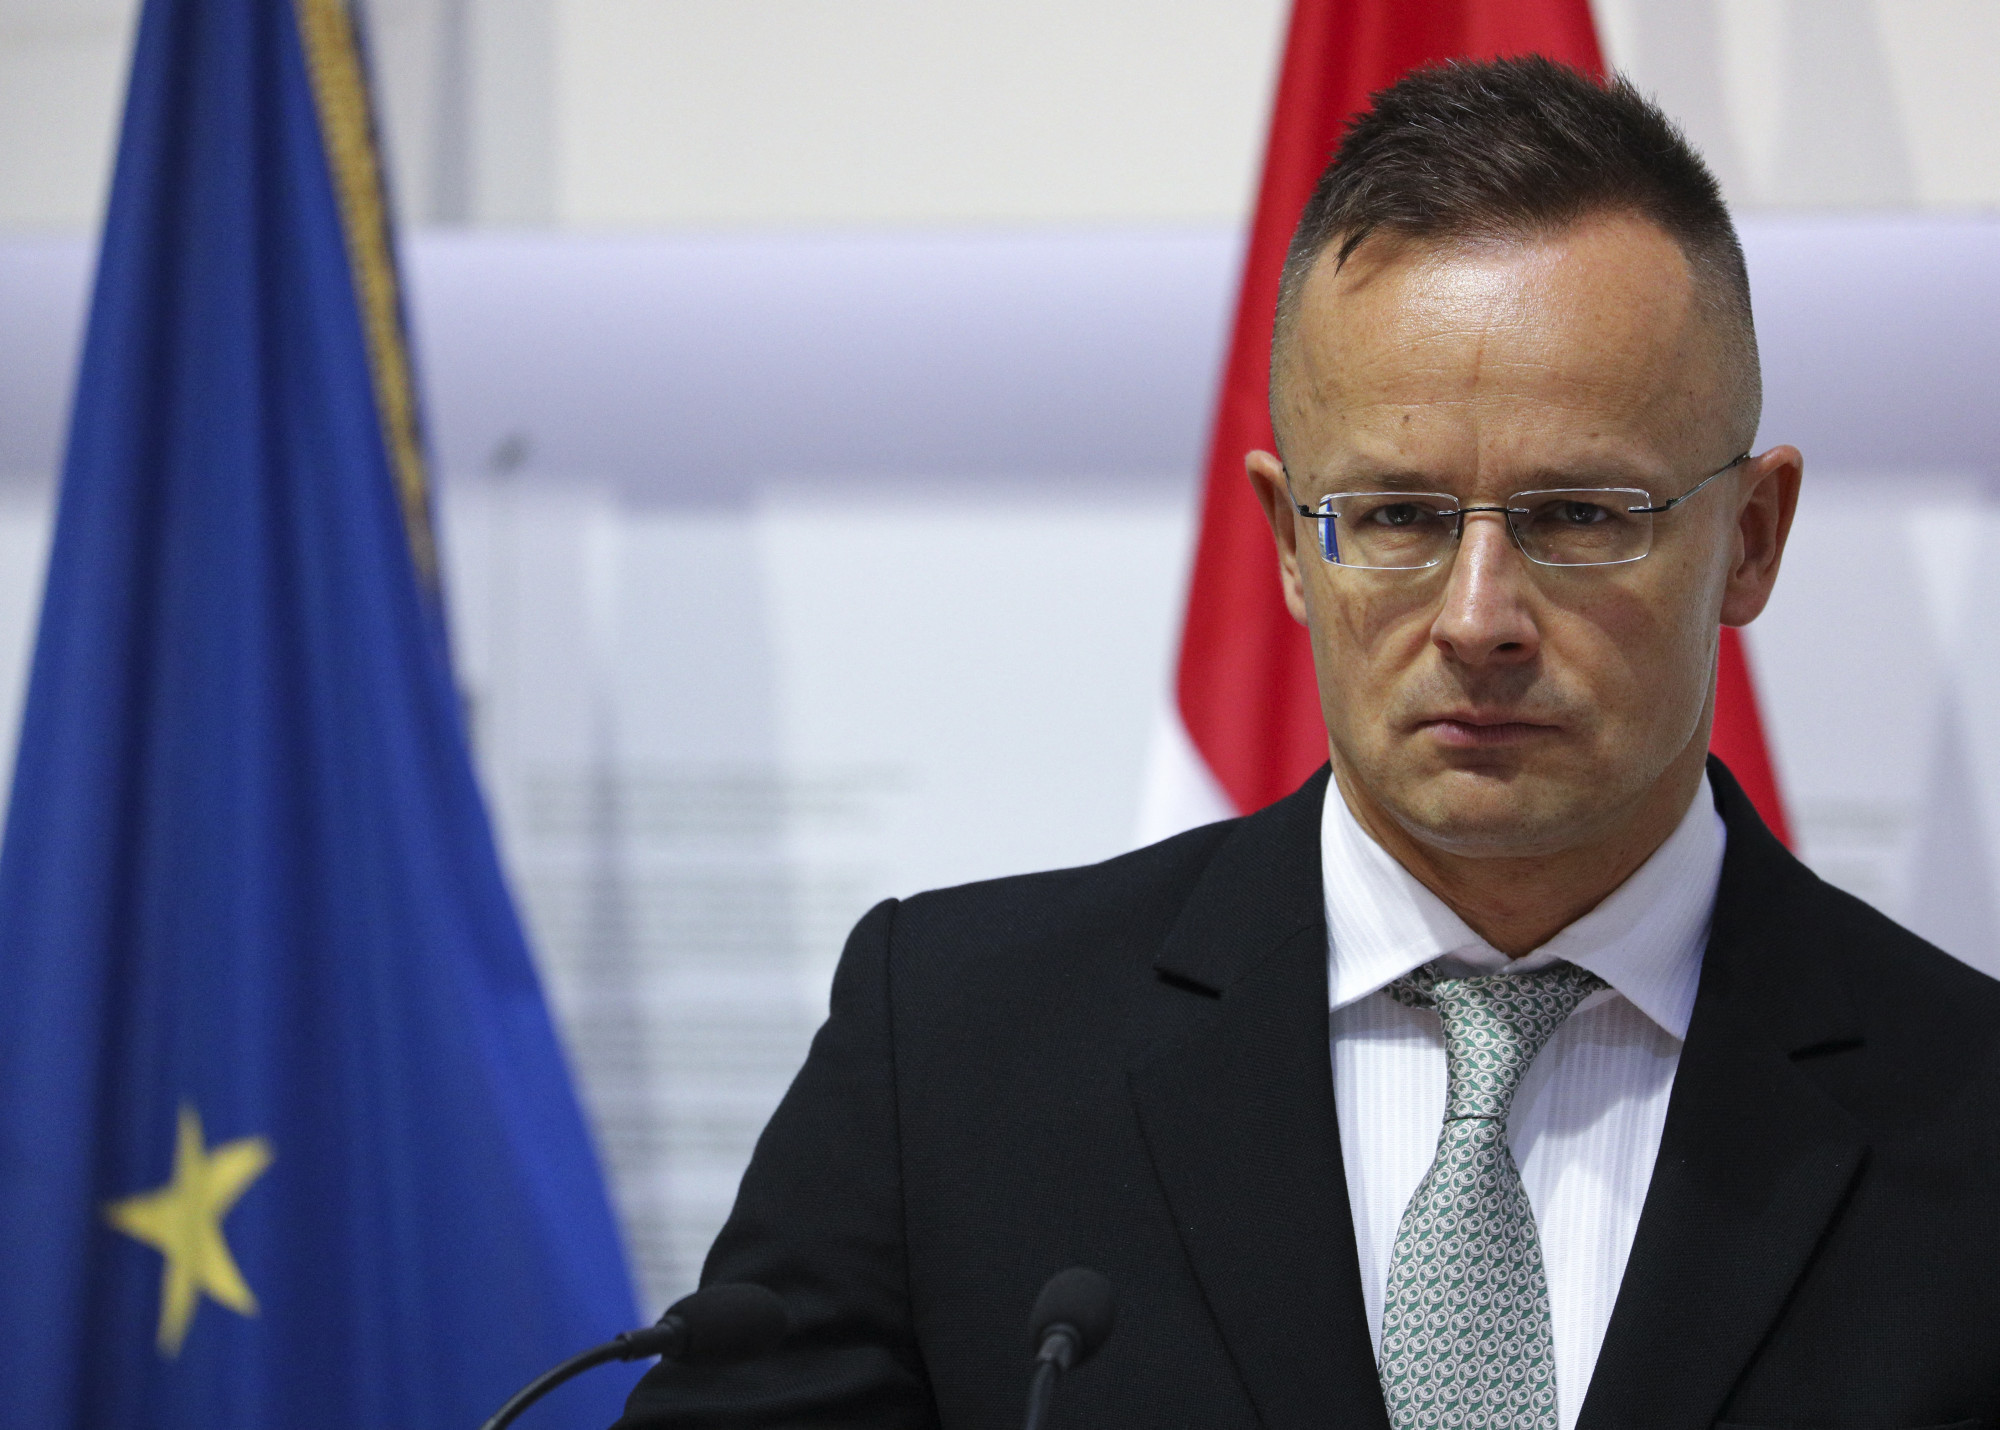 Kijevben felszólították a magyar nagykövetet, hogy abba kellene hagyni az ukránellenes retorikát